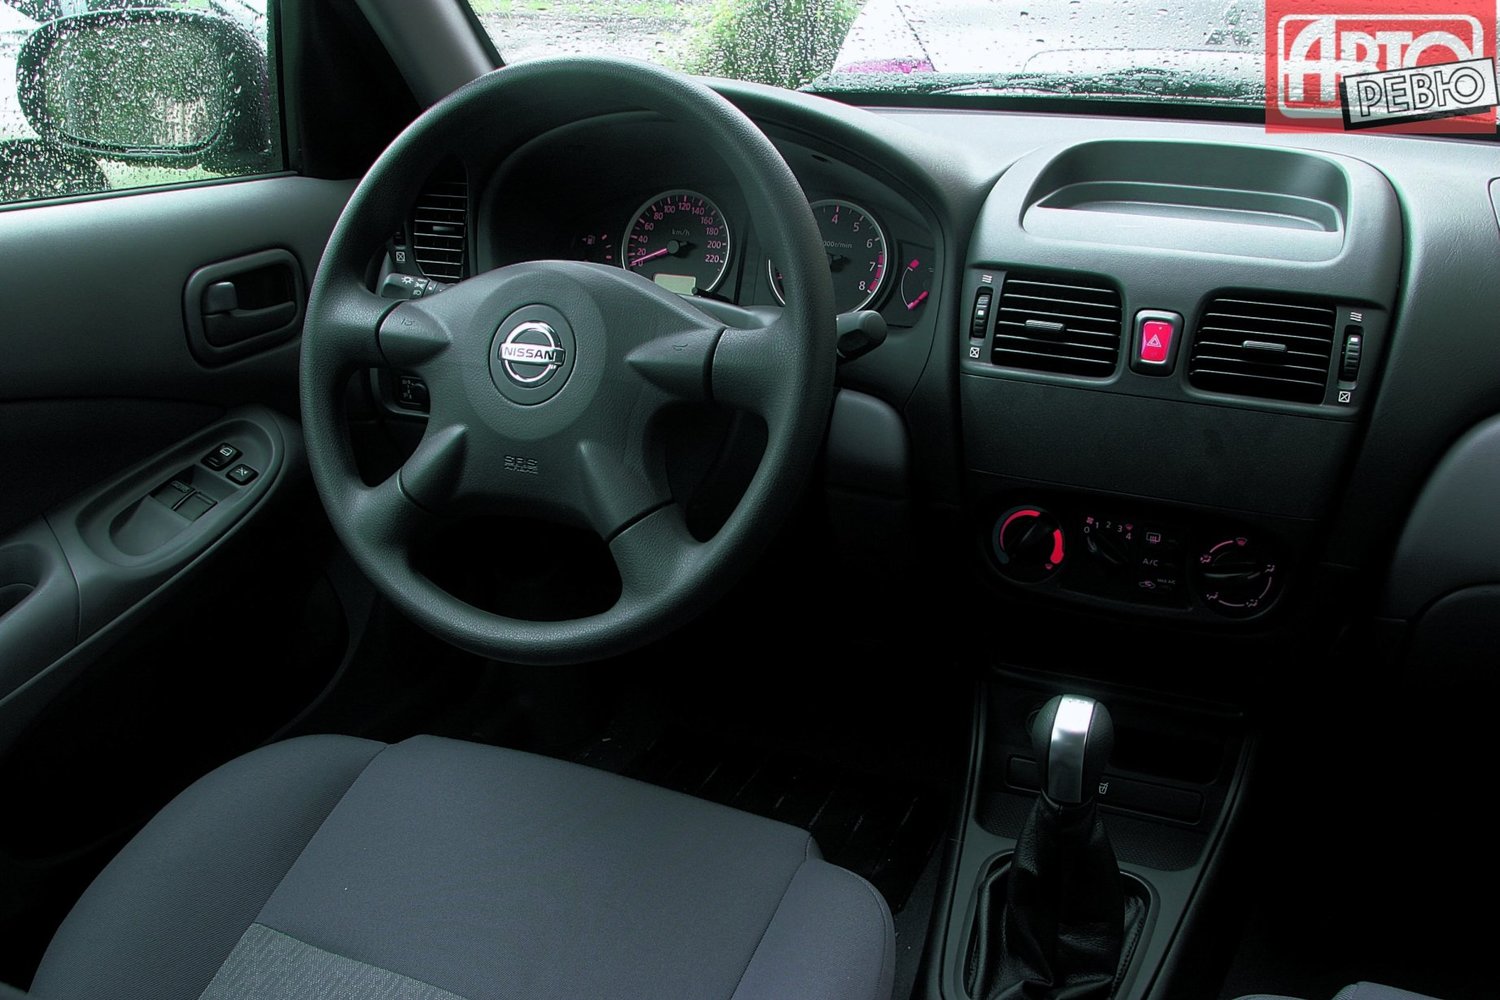 хэтчбек 5 дв. Nissan Almera 2003 - 2006г выпуска модификация 1.5 MT (82 л.с.)